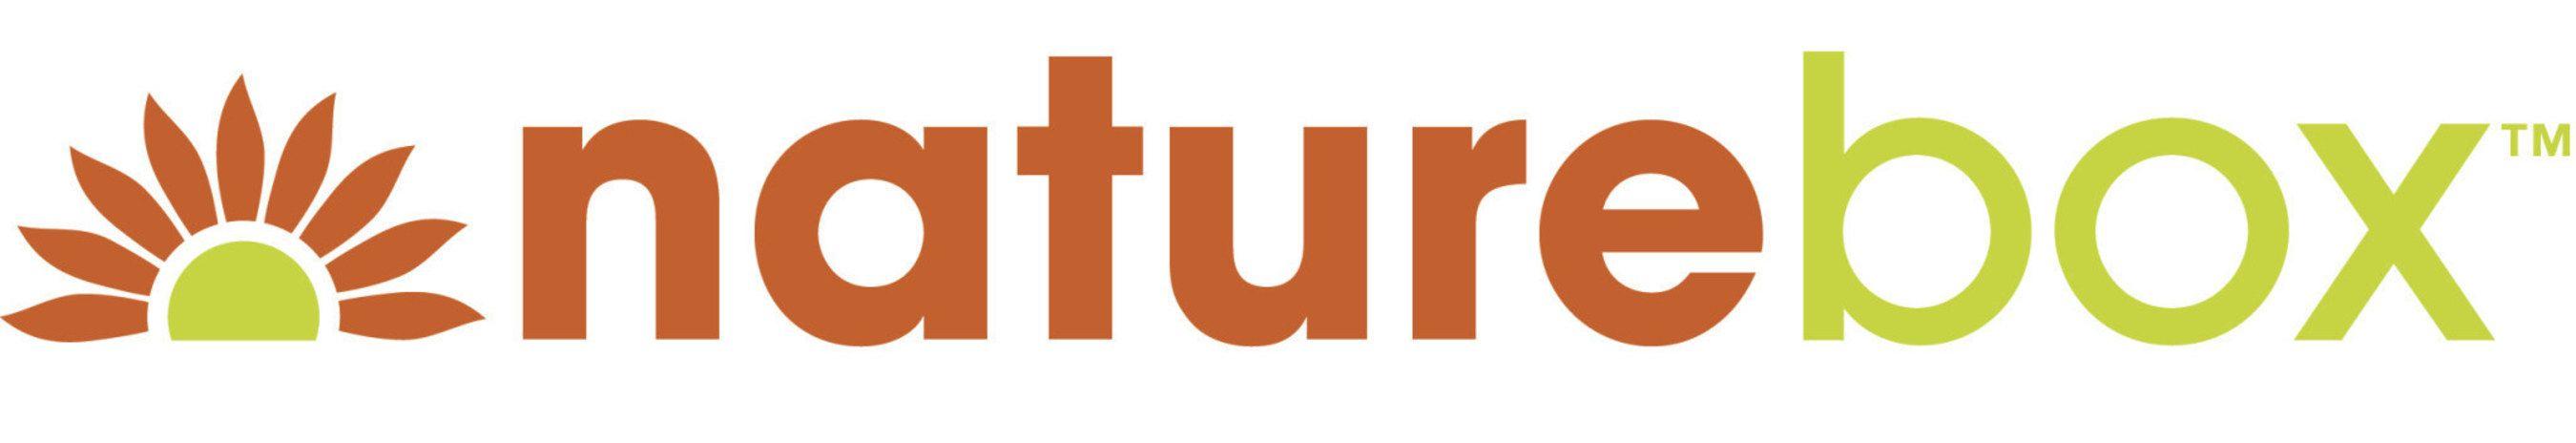 Nature Box Logo - NatureBox Raises $30 Million in 'Series C' Round Funding, Securing ...